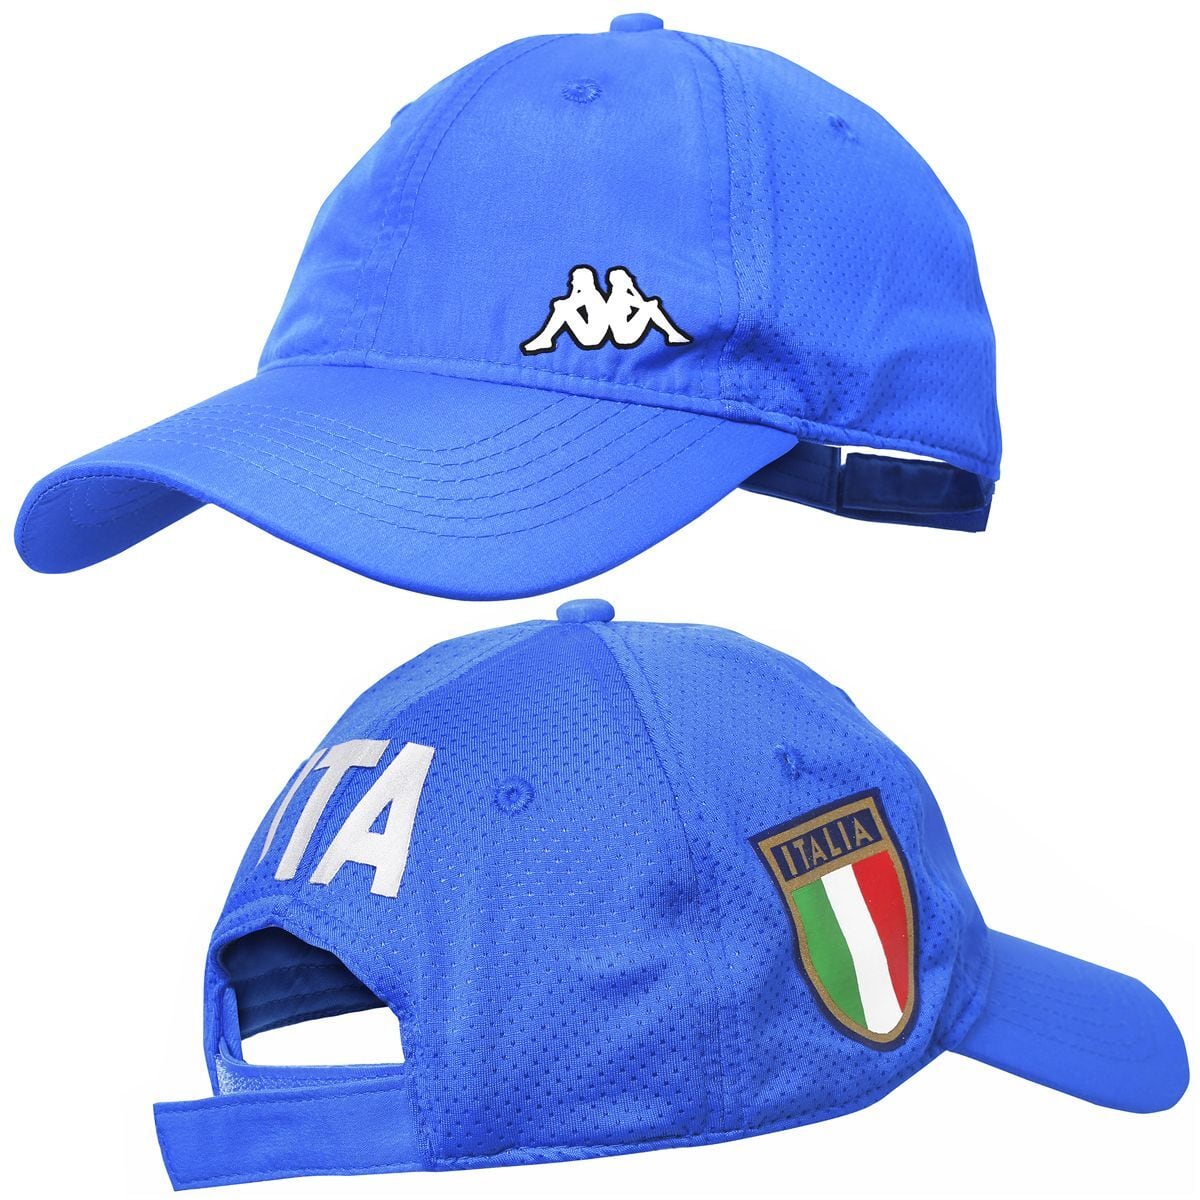 カッパ Kappa イタリア代表 キャップ 帽子 ゴルフ ボート フェンシング FREAK スポーツウェア 通販・海外ブランド・日本国内未入荷・海外直輸入